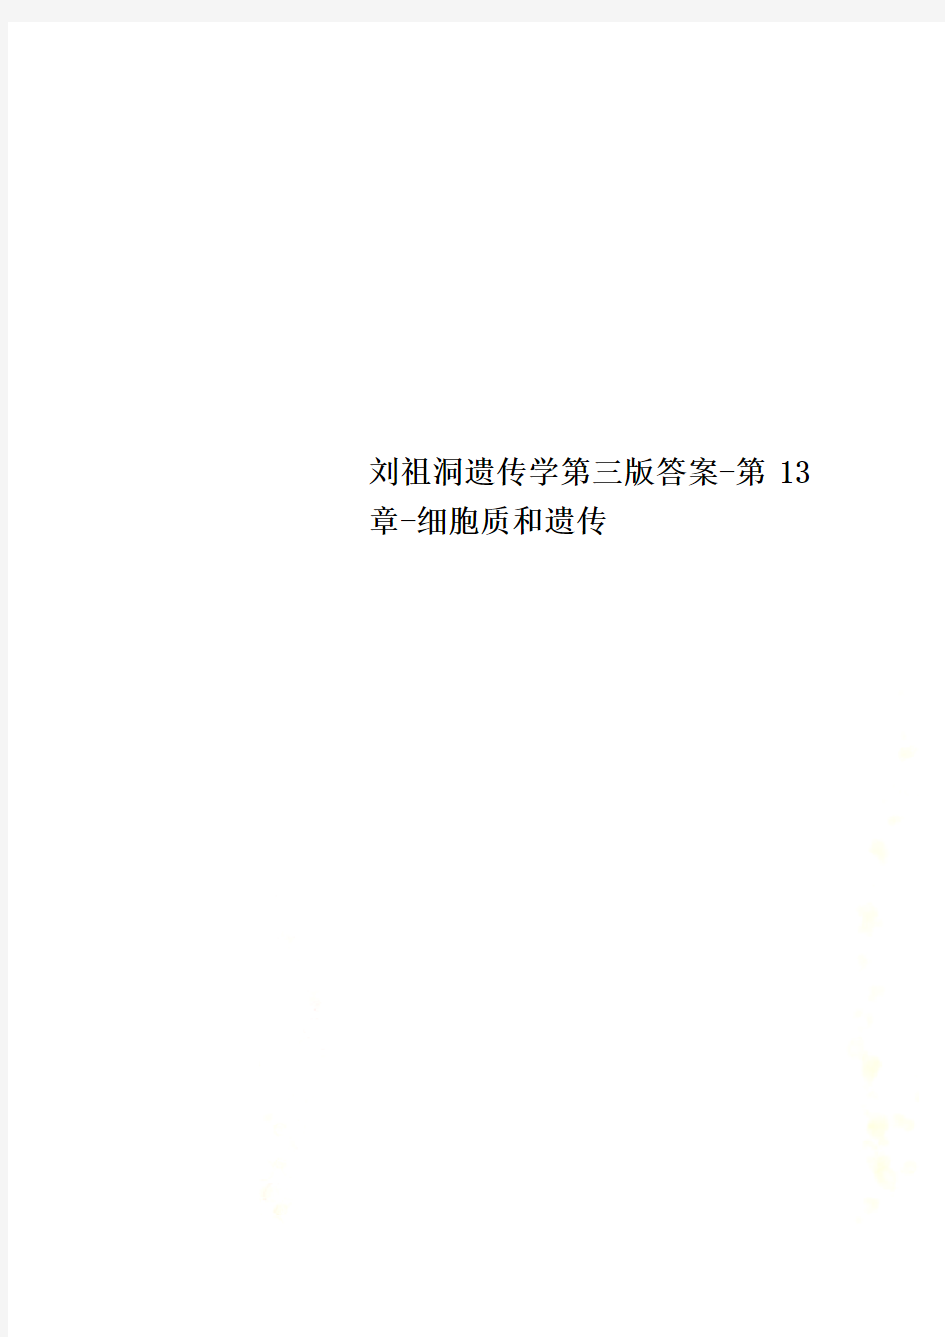 刘祖洞遗传学第三版答案-第13章-细胞质和遗传